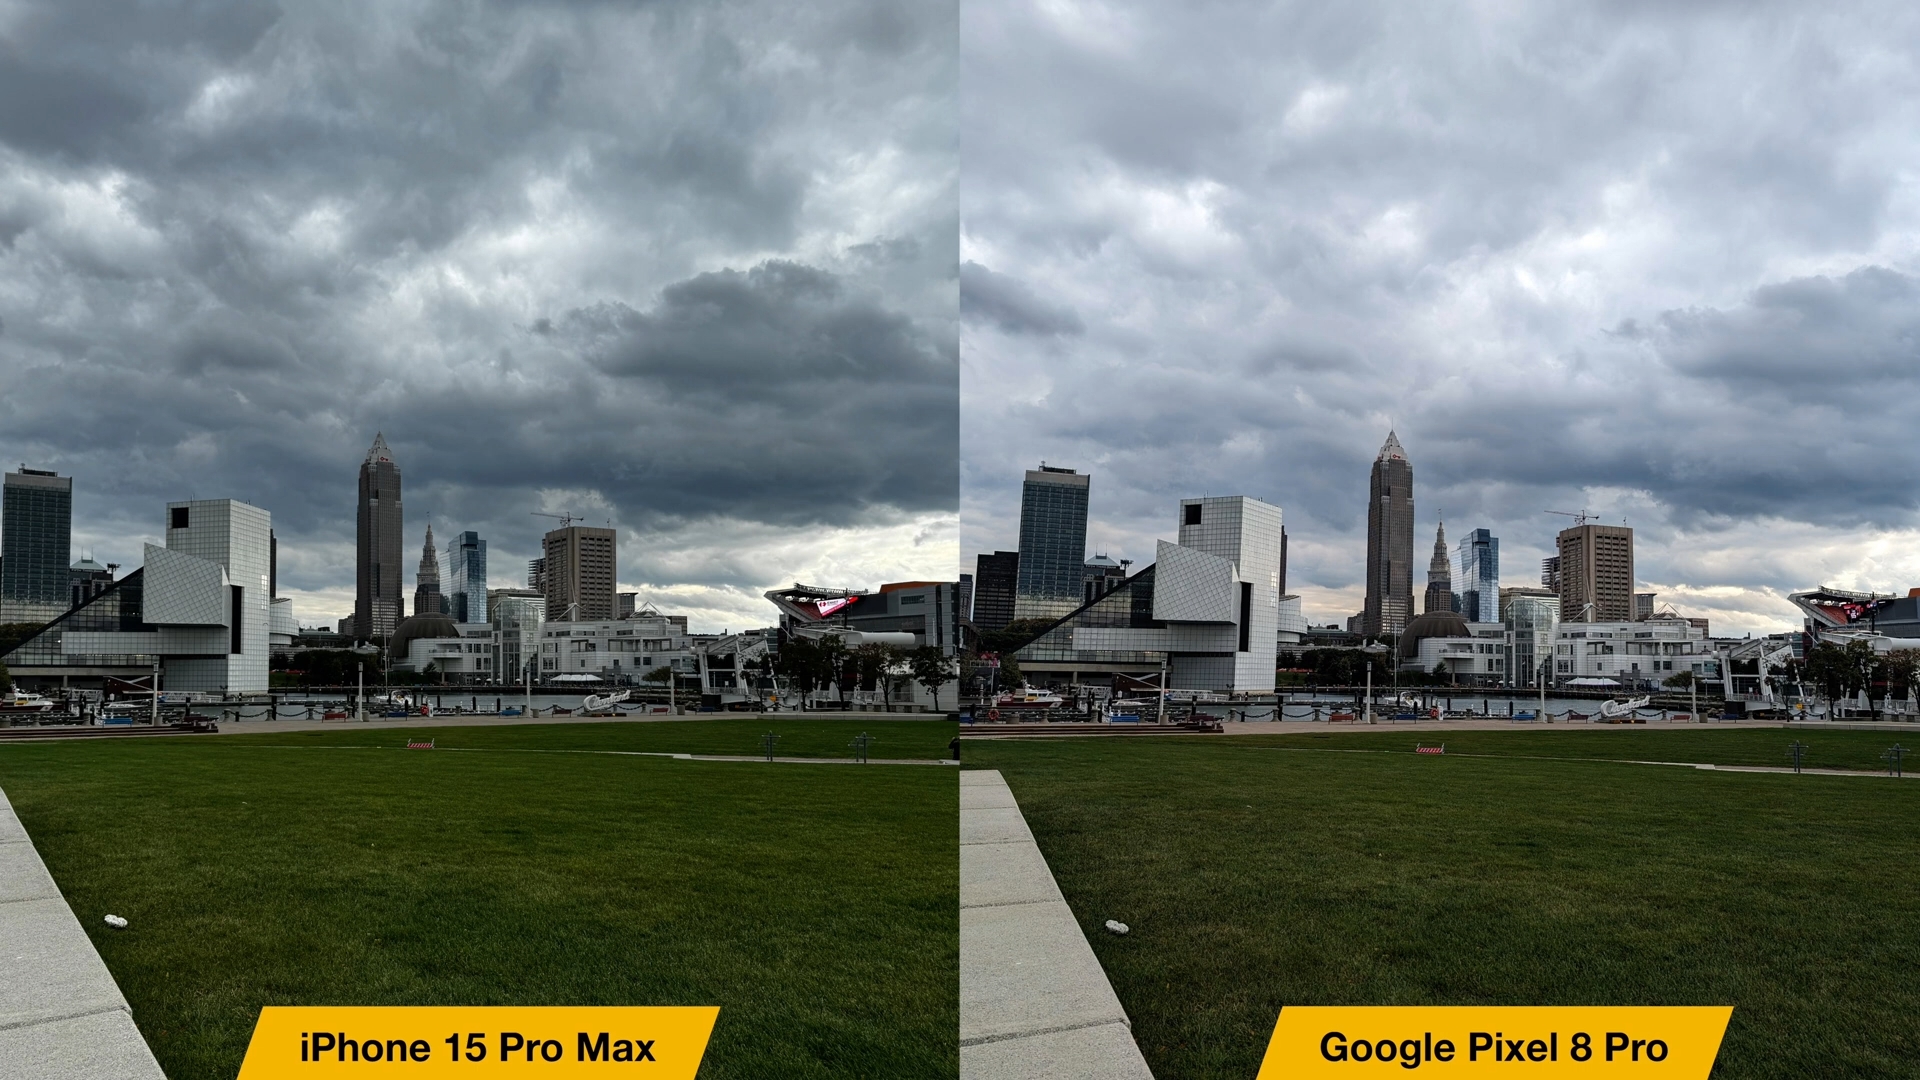 iPhoneIslam.com'dan fotoğraflarla iPhone 15 Pro Max ile Google Pixel 8 Pro arasındaki karşılaştırma